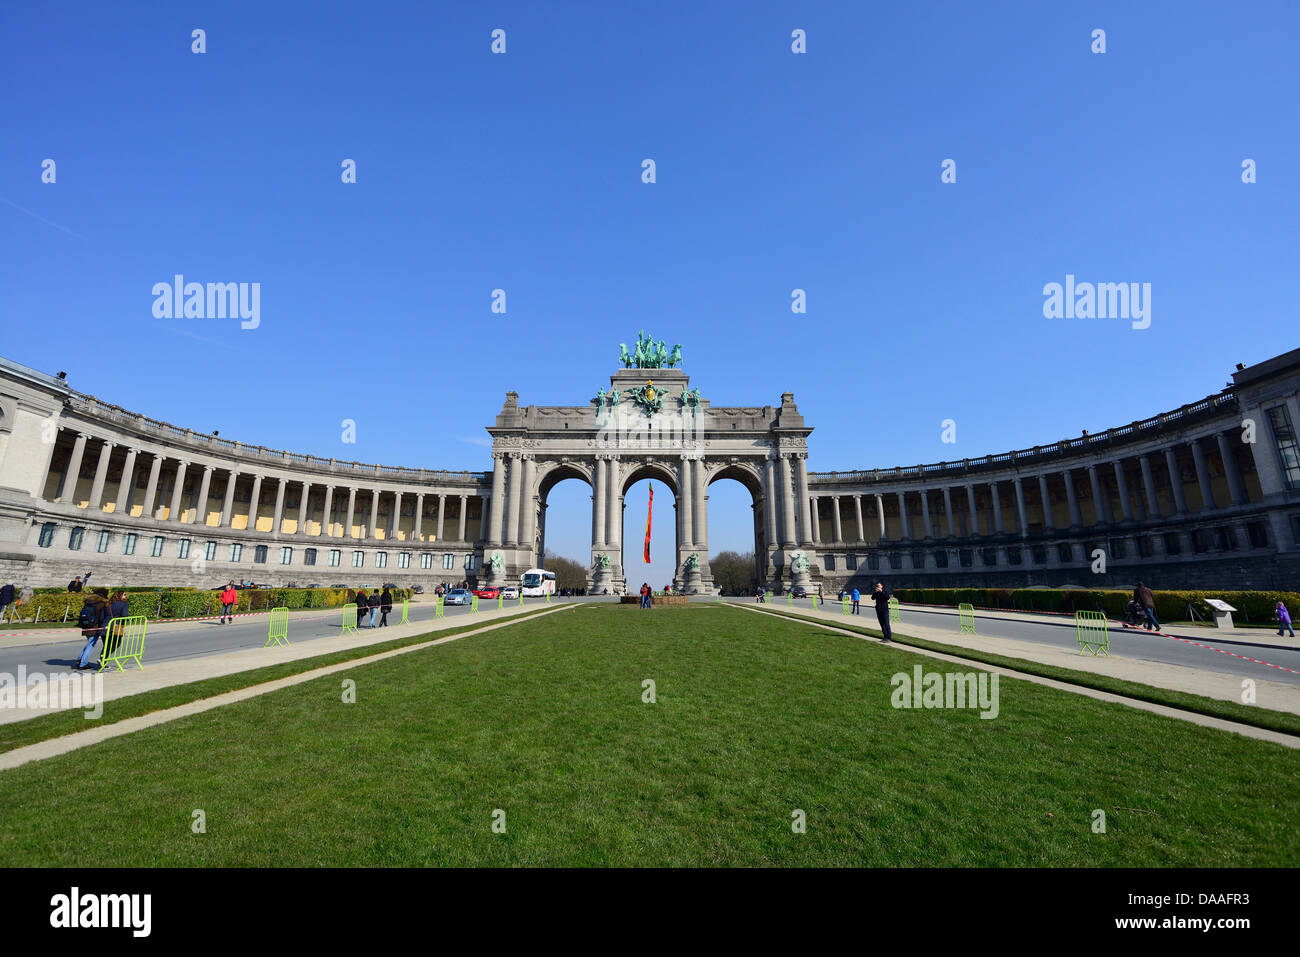 Belge, Belgique, Bruxelles, Bruxelles, l'Europe, le parc du cinquantenaire, parc du cinquantenaire, Arc de Triomphe, dans l'ouest de l'Europe, arch Banque D'Images